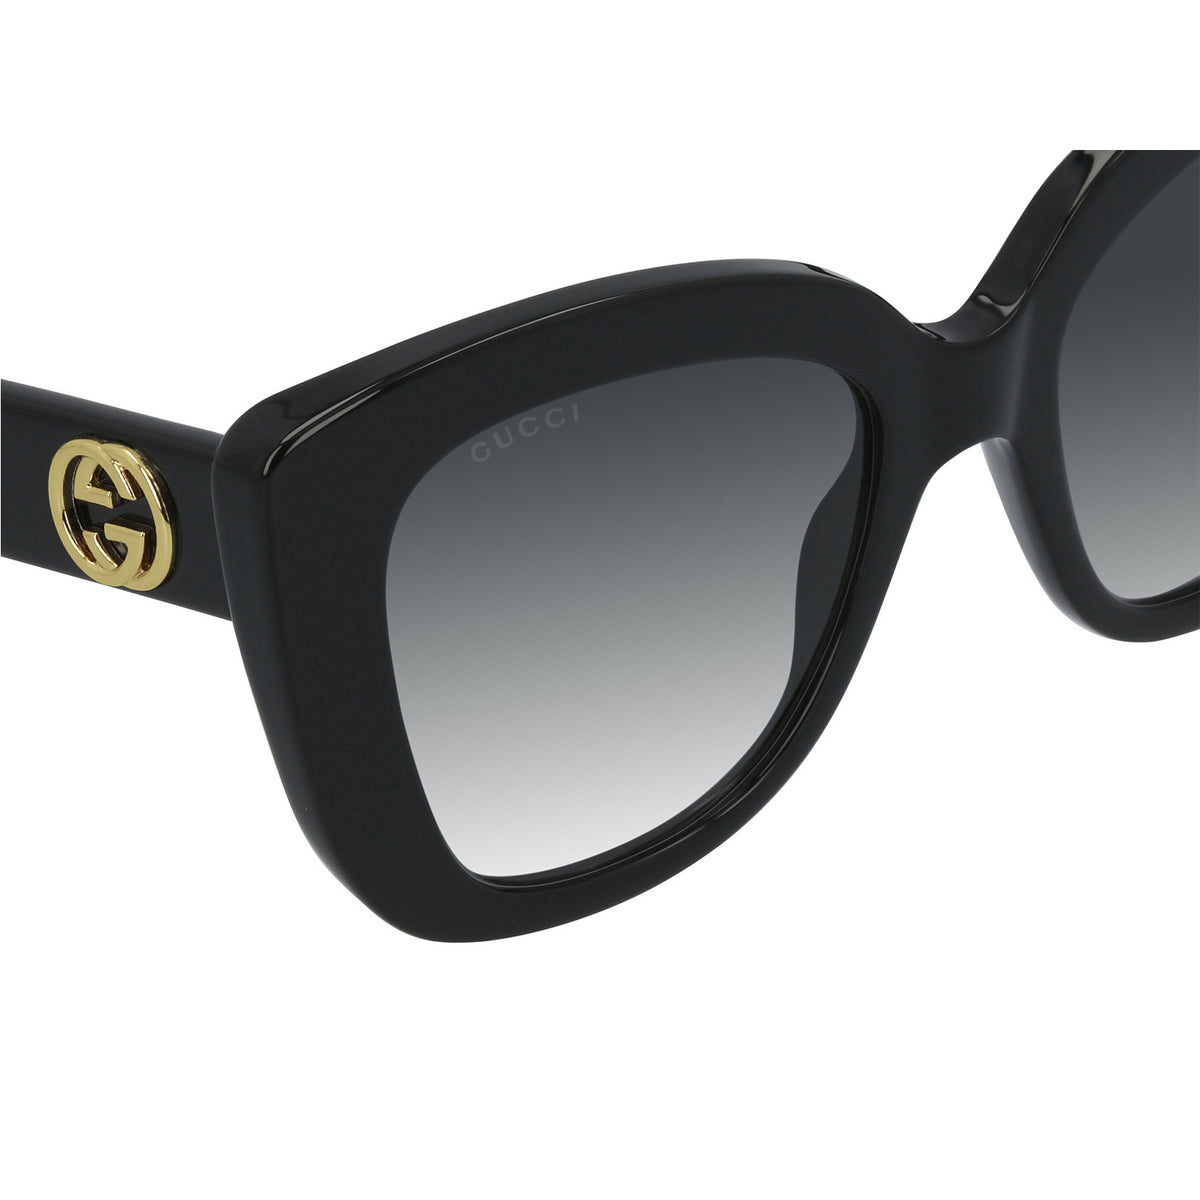 Gucci GG0327S-001 52mm New Sunglasses